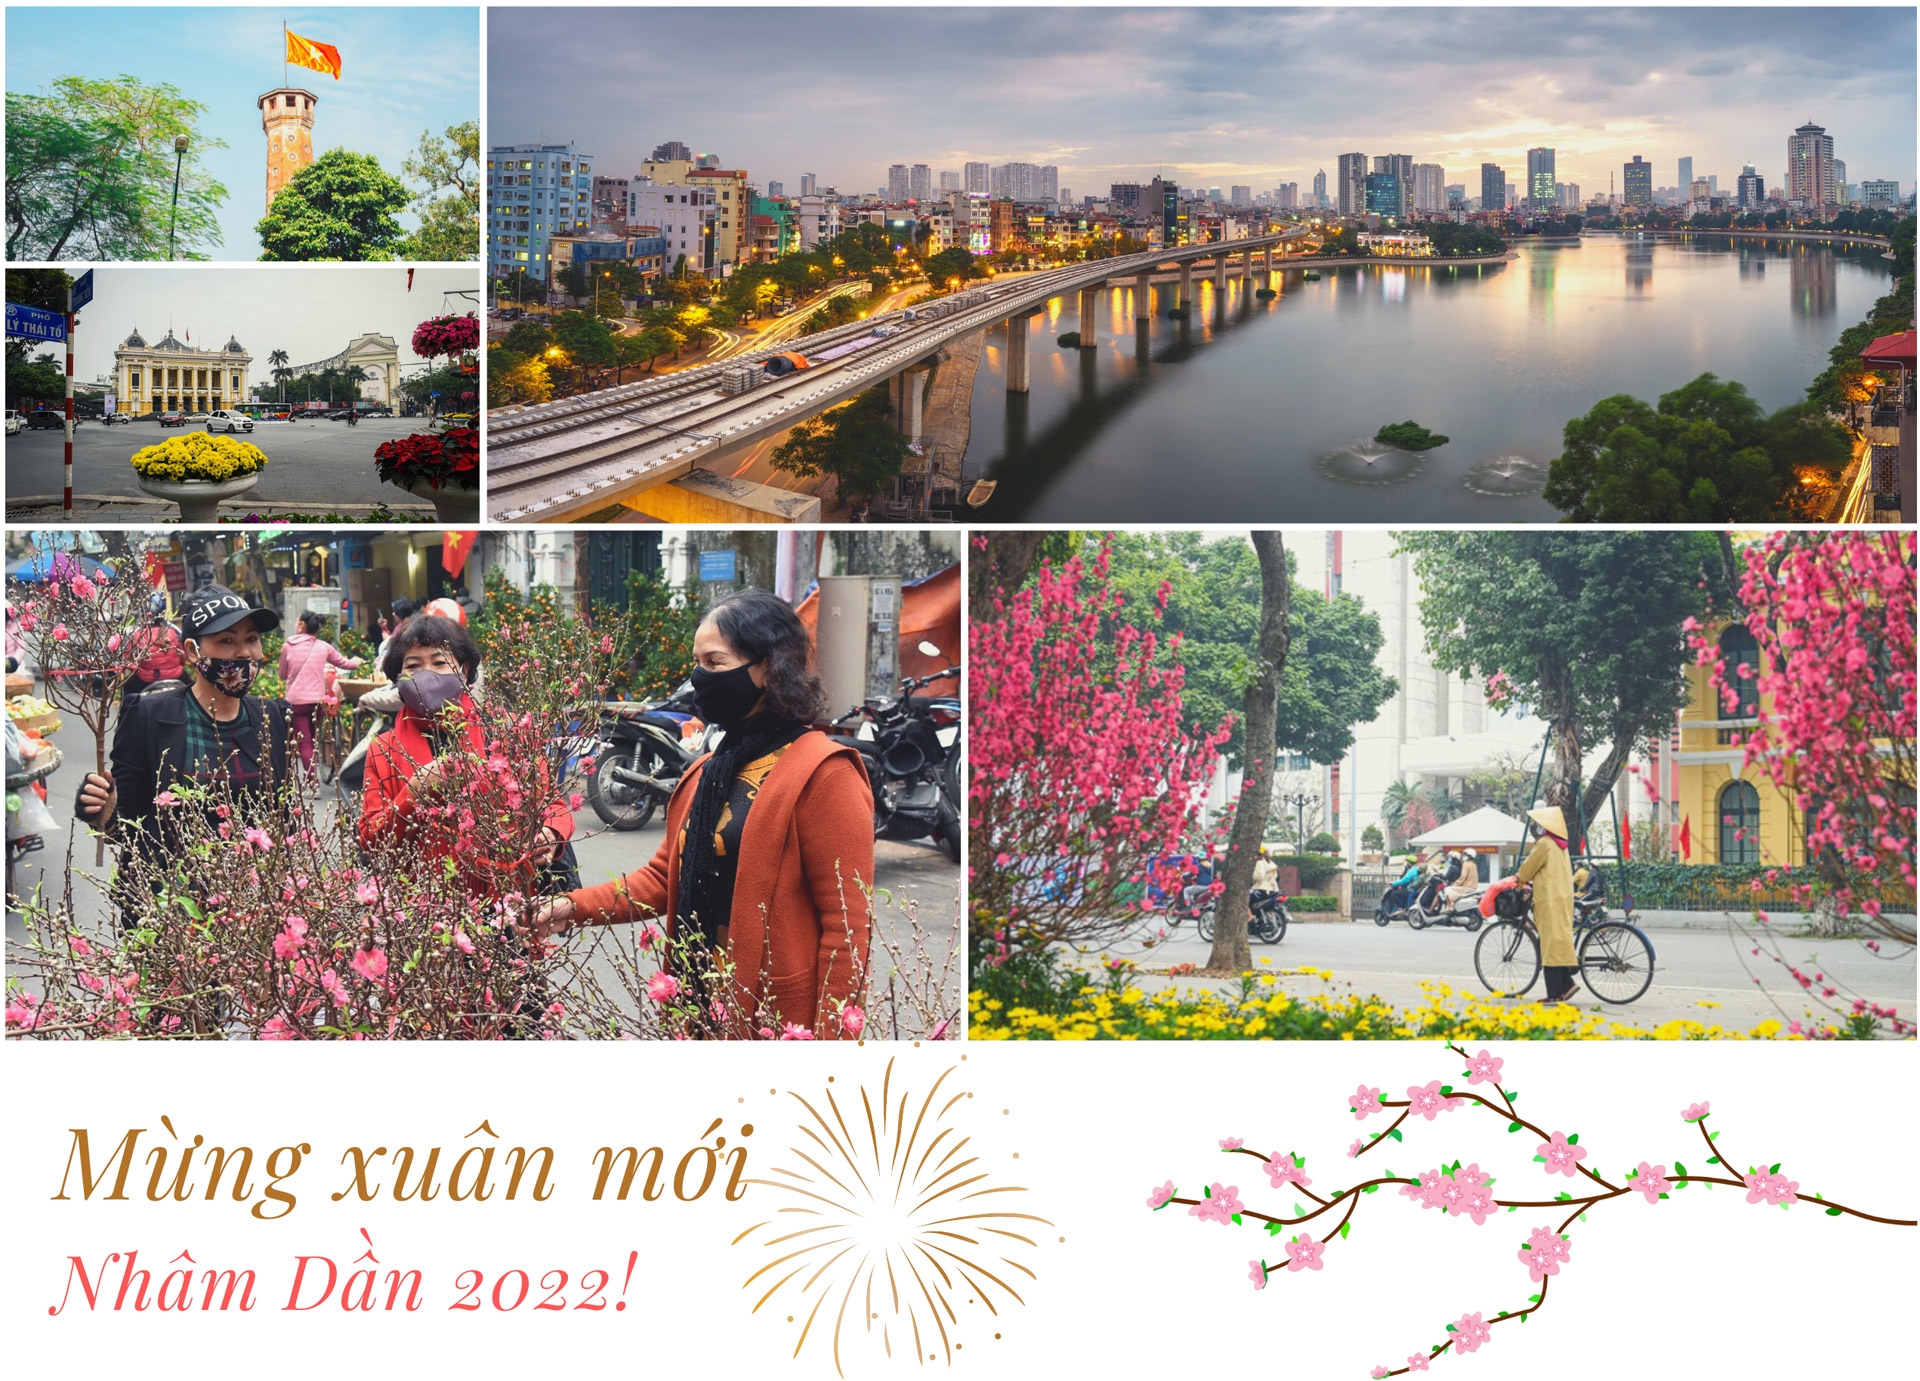 Khơi dậy sức mạnh văn hóa, đưa Hà Nội phát triển lên tầm cao mới